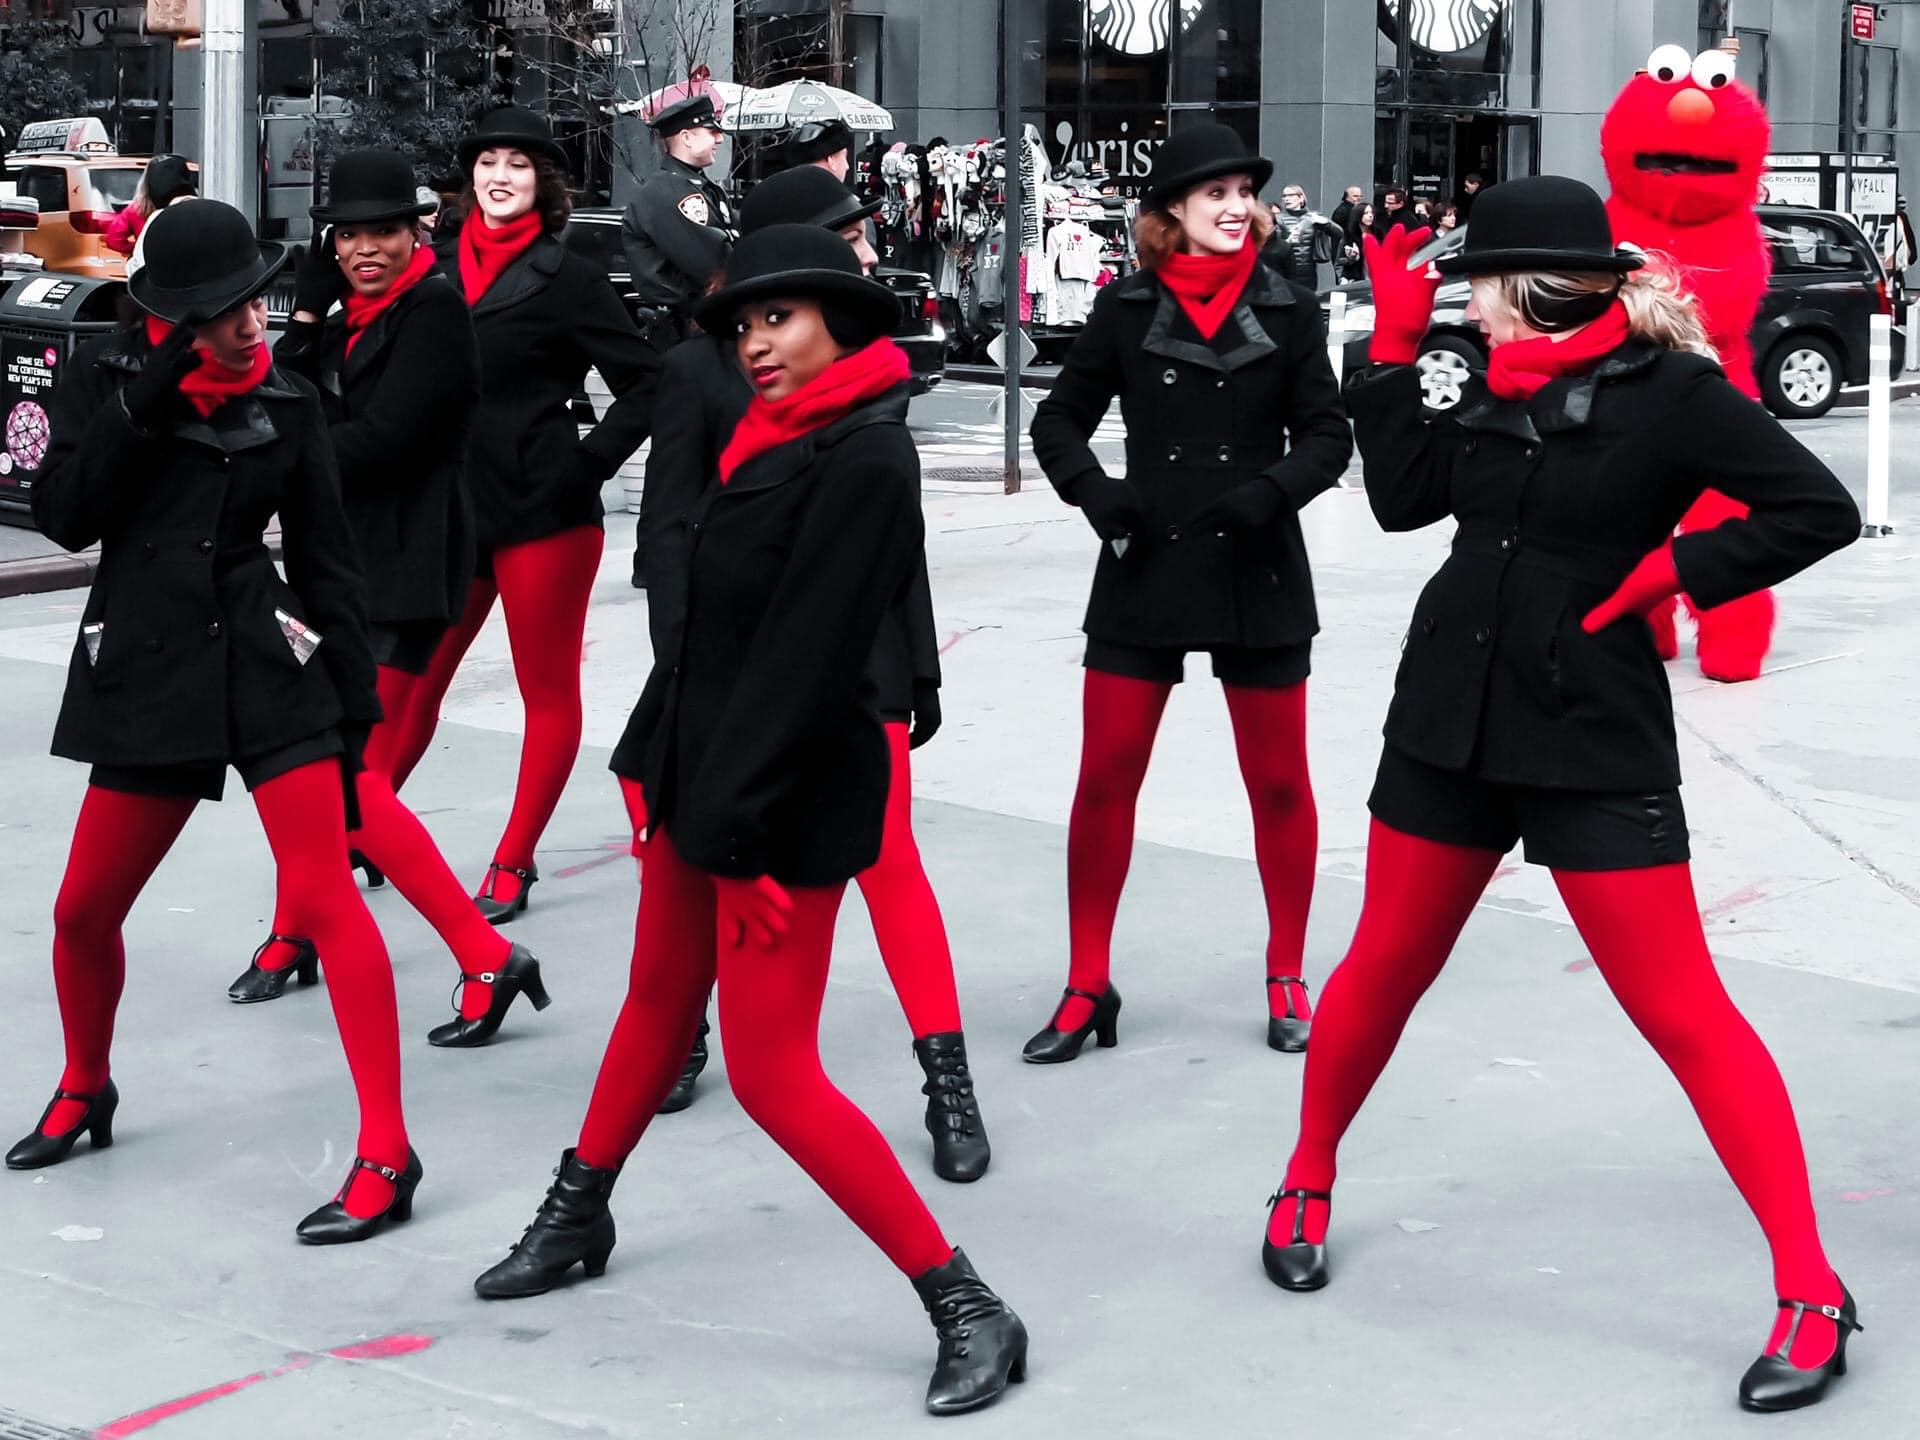 Gatubild som visar kvinnor klädda i svart och rött från en parad